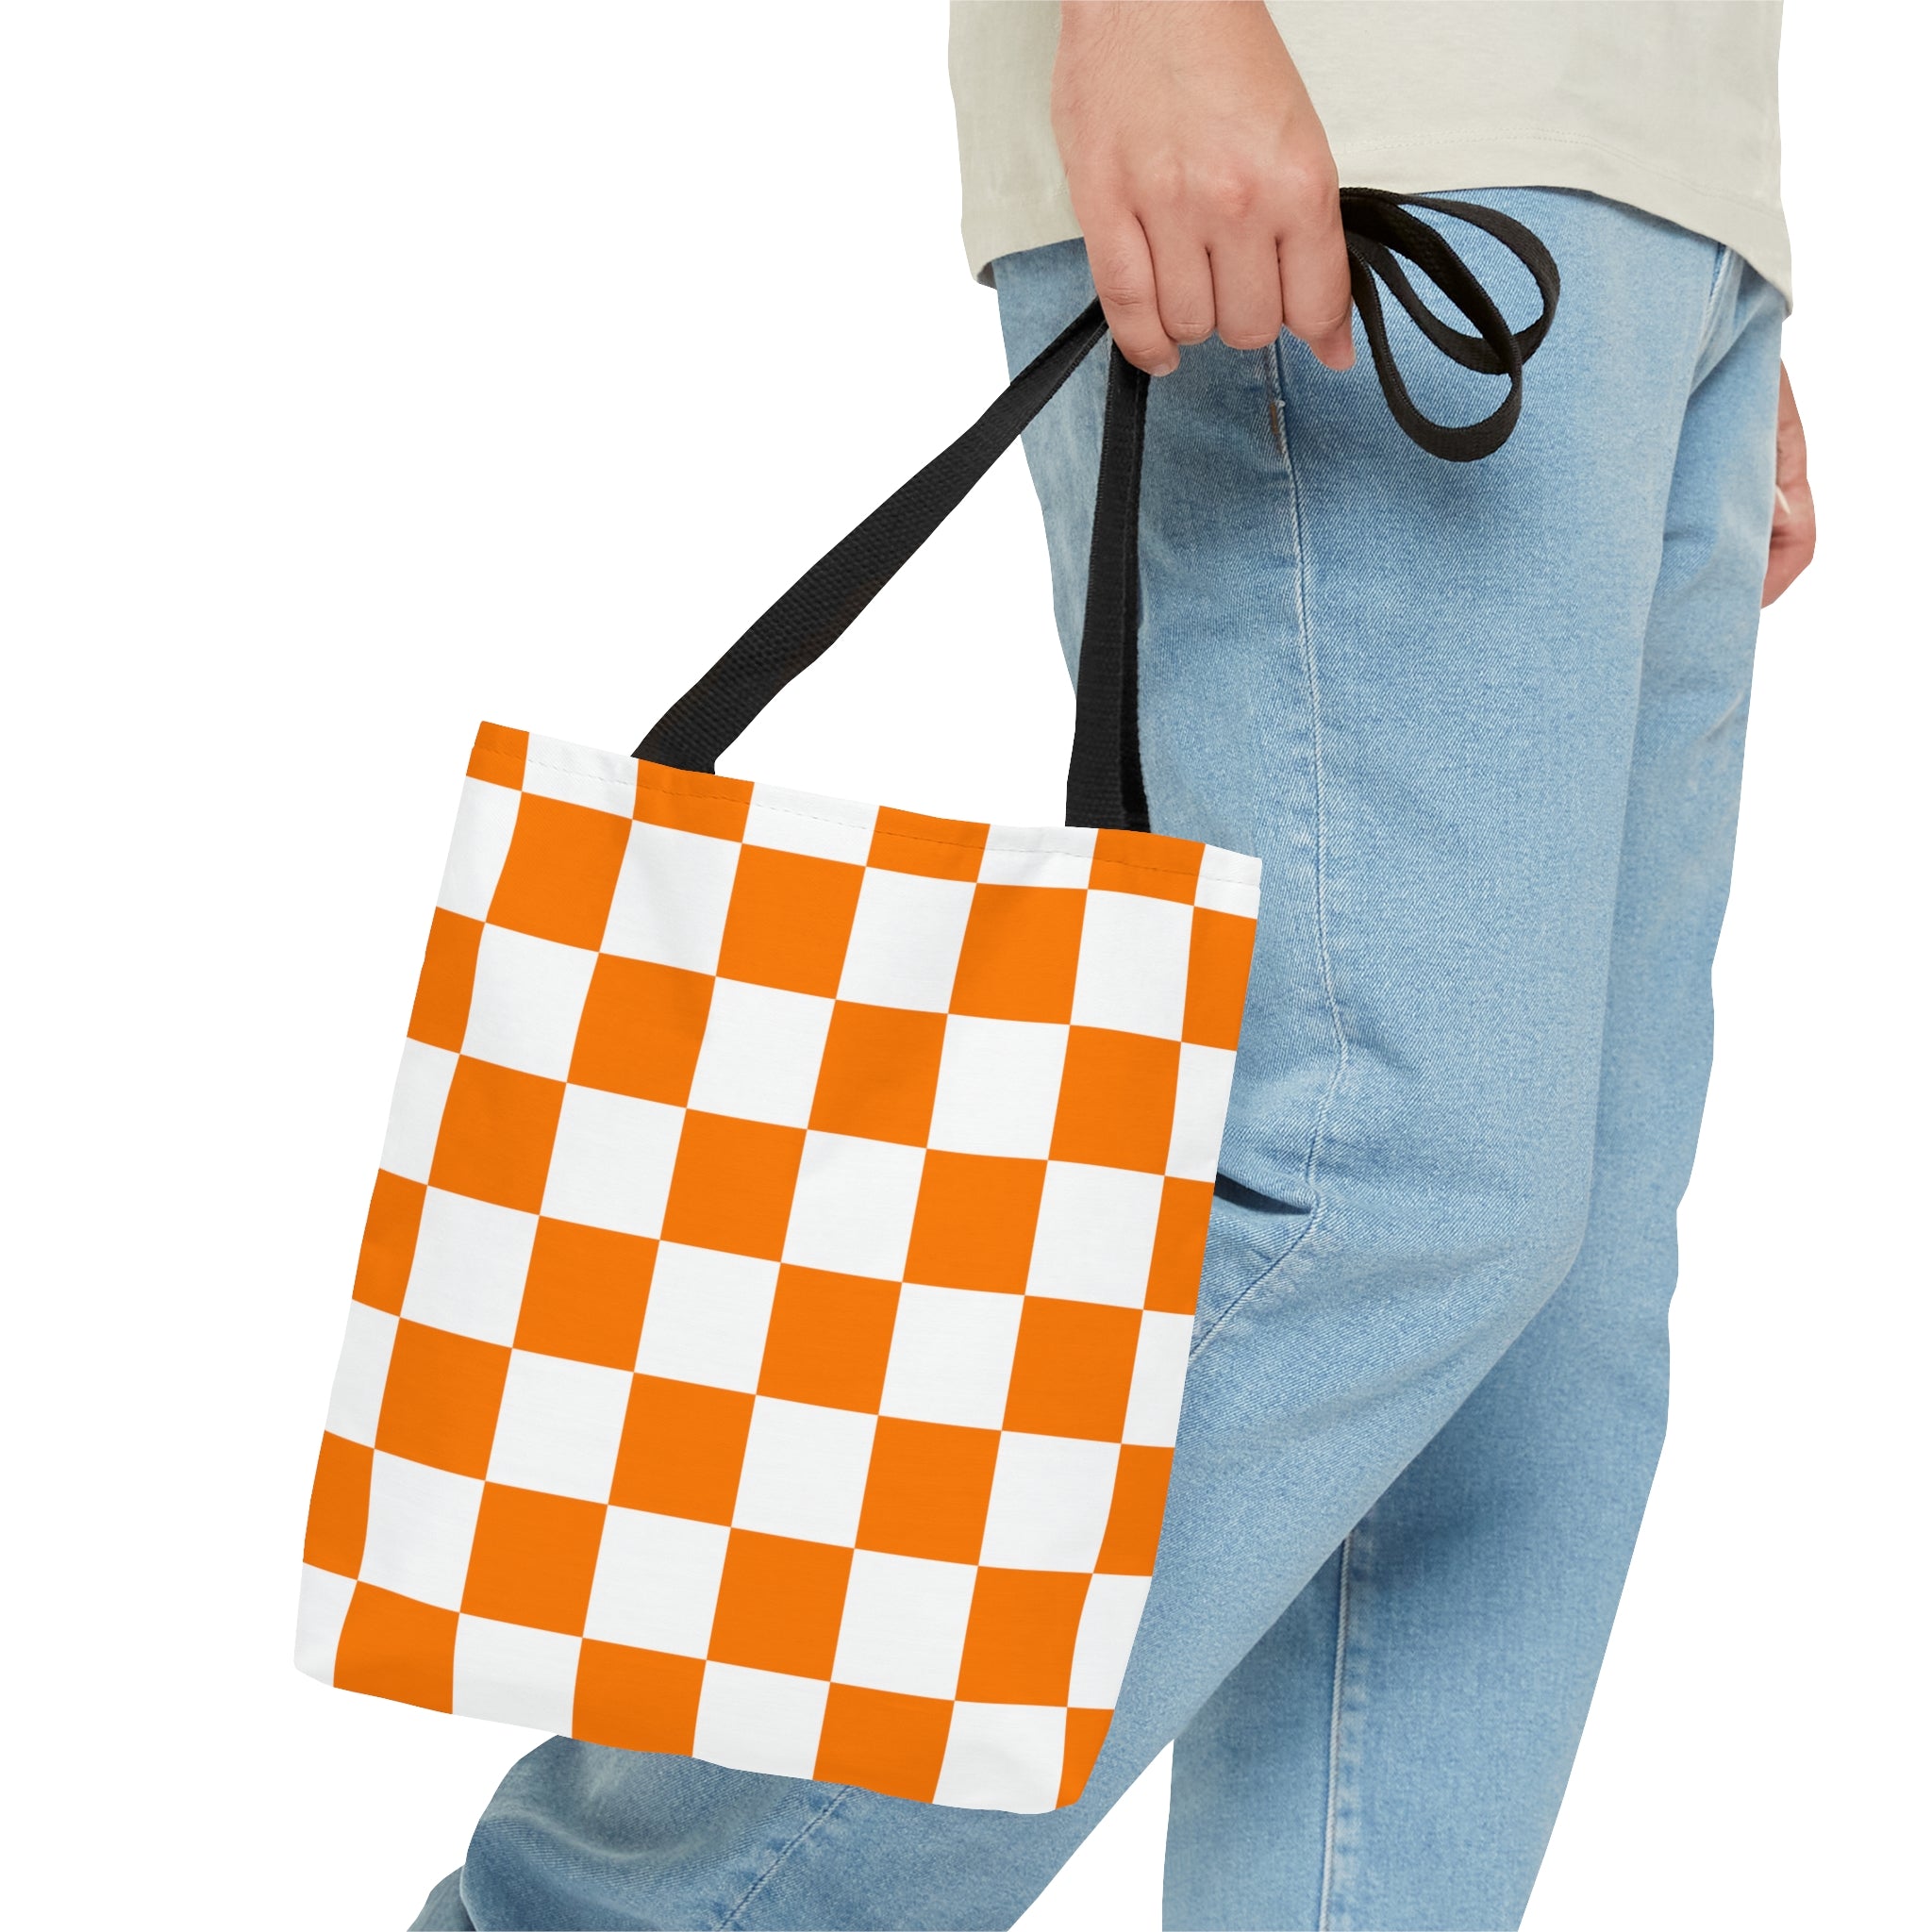 Checkerboard Tote Bag